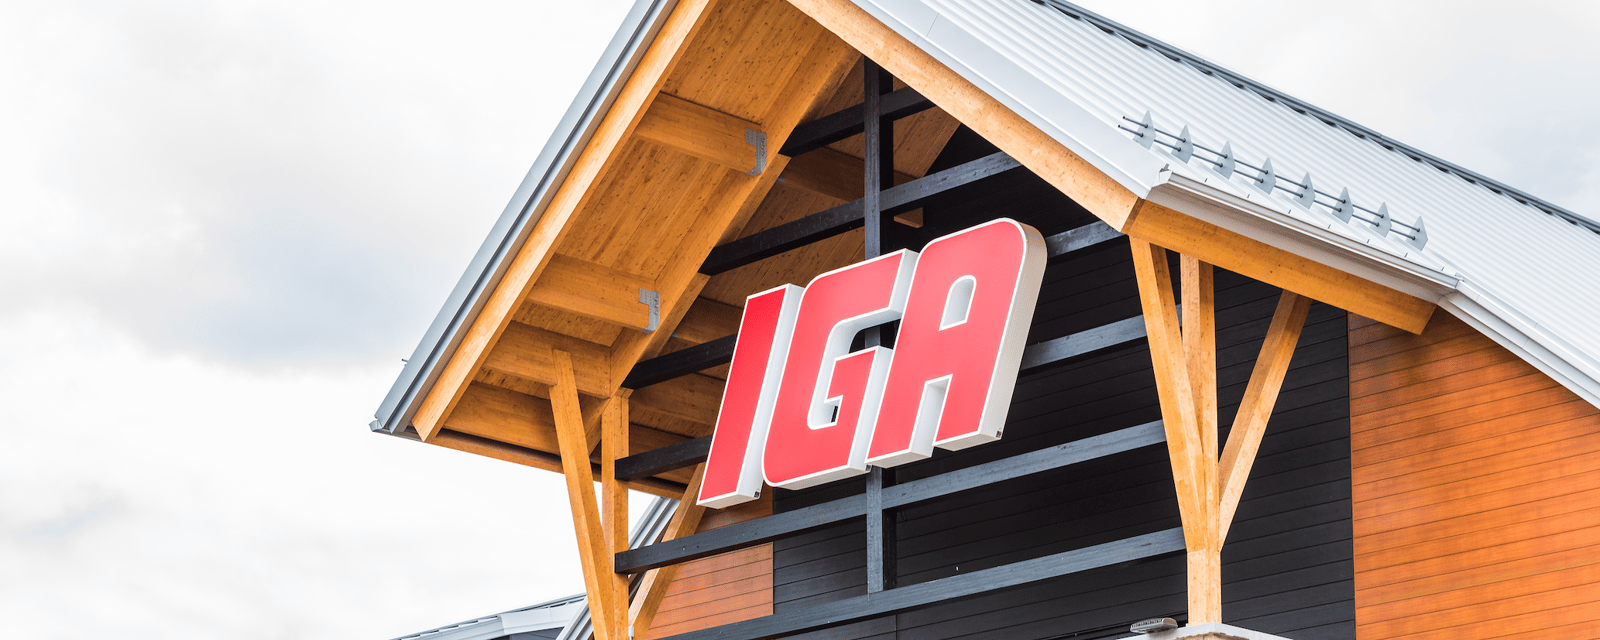 Mauvaise nouvelle pour les clients d'IGA, au moment où les prix montent en flèche